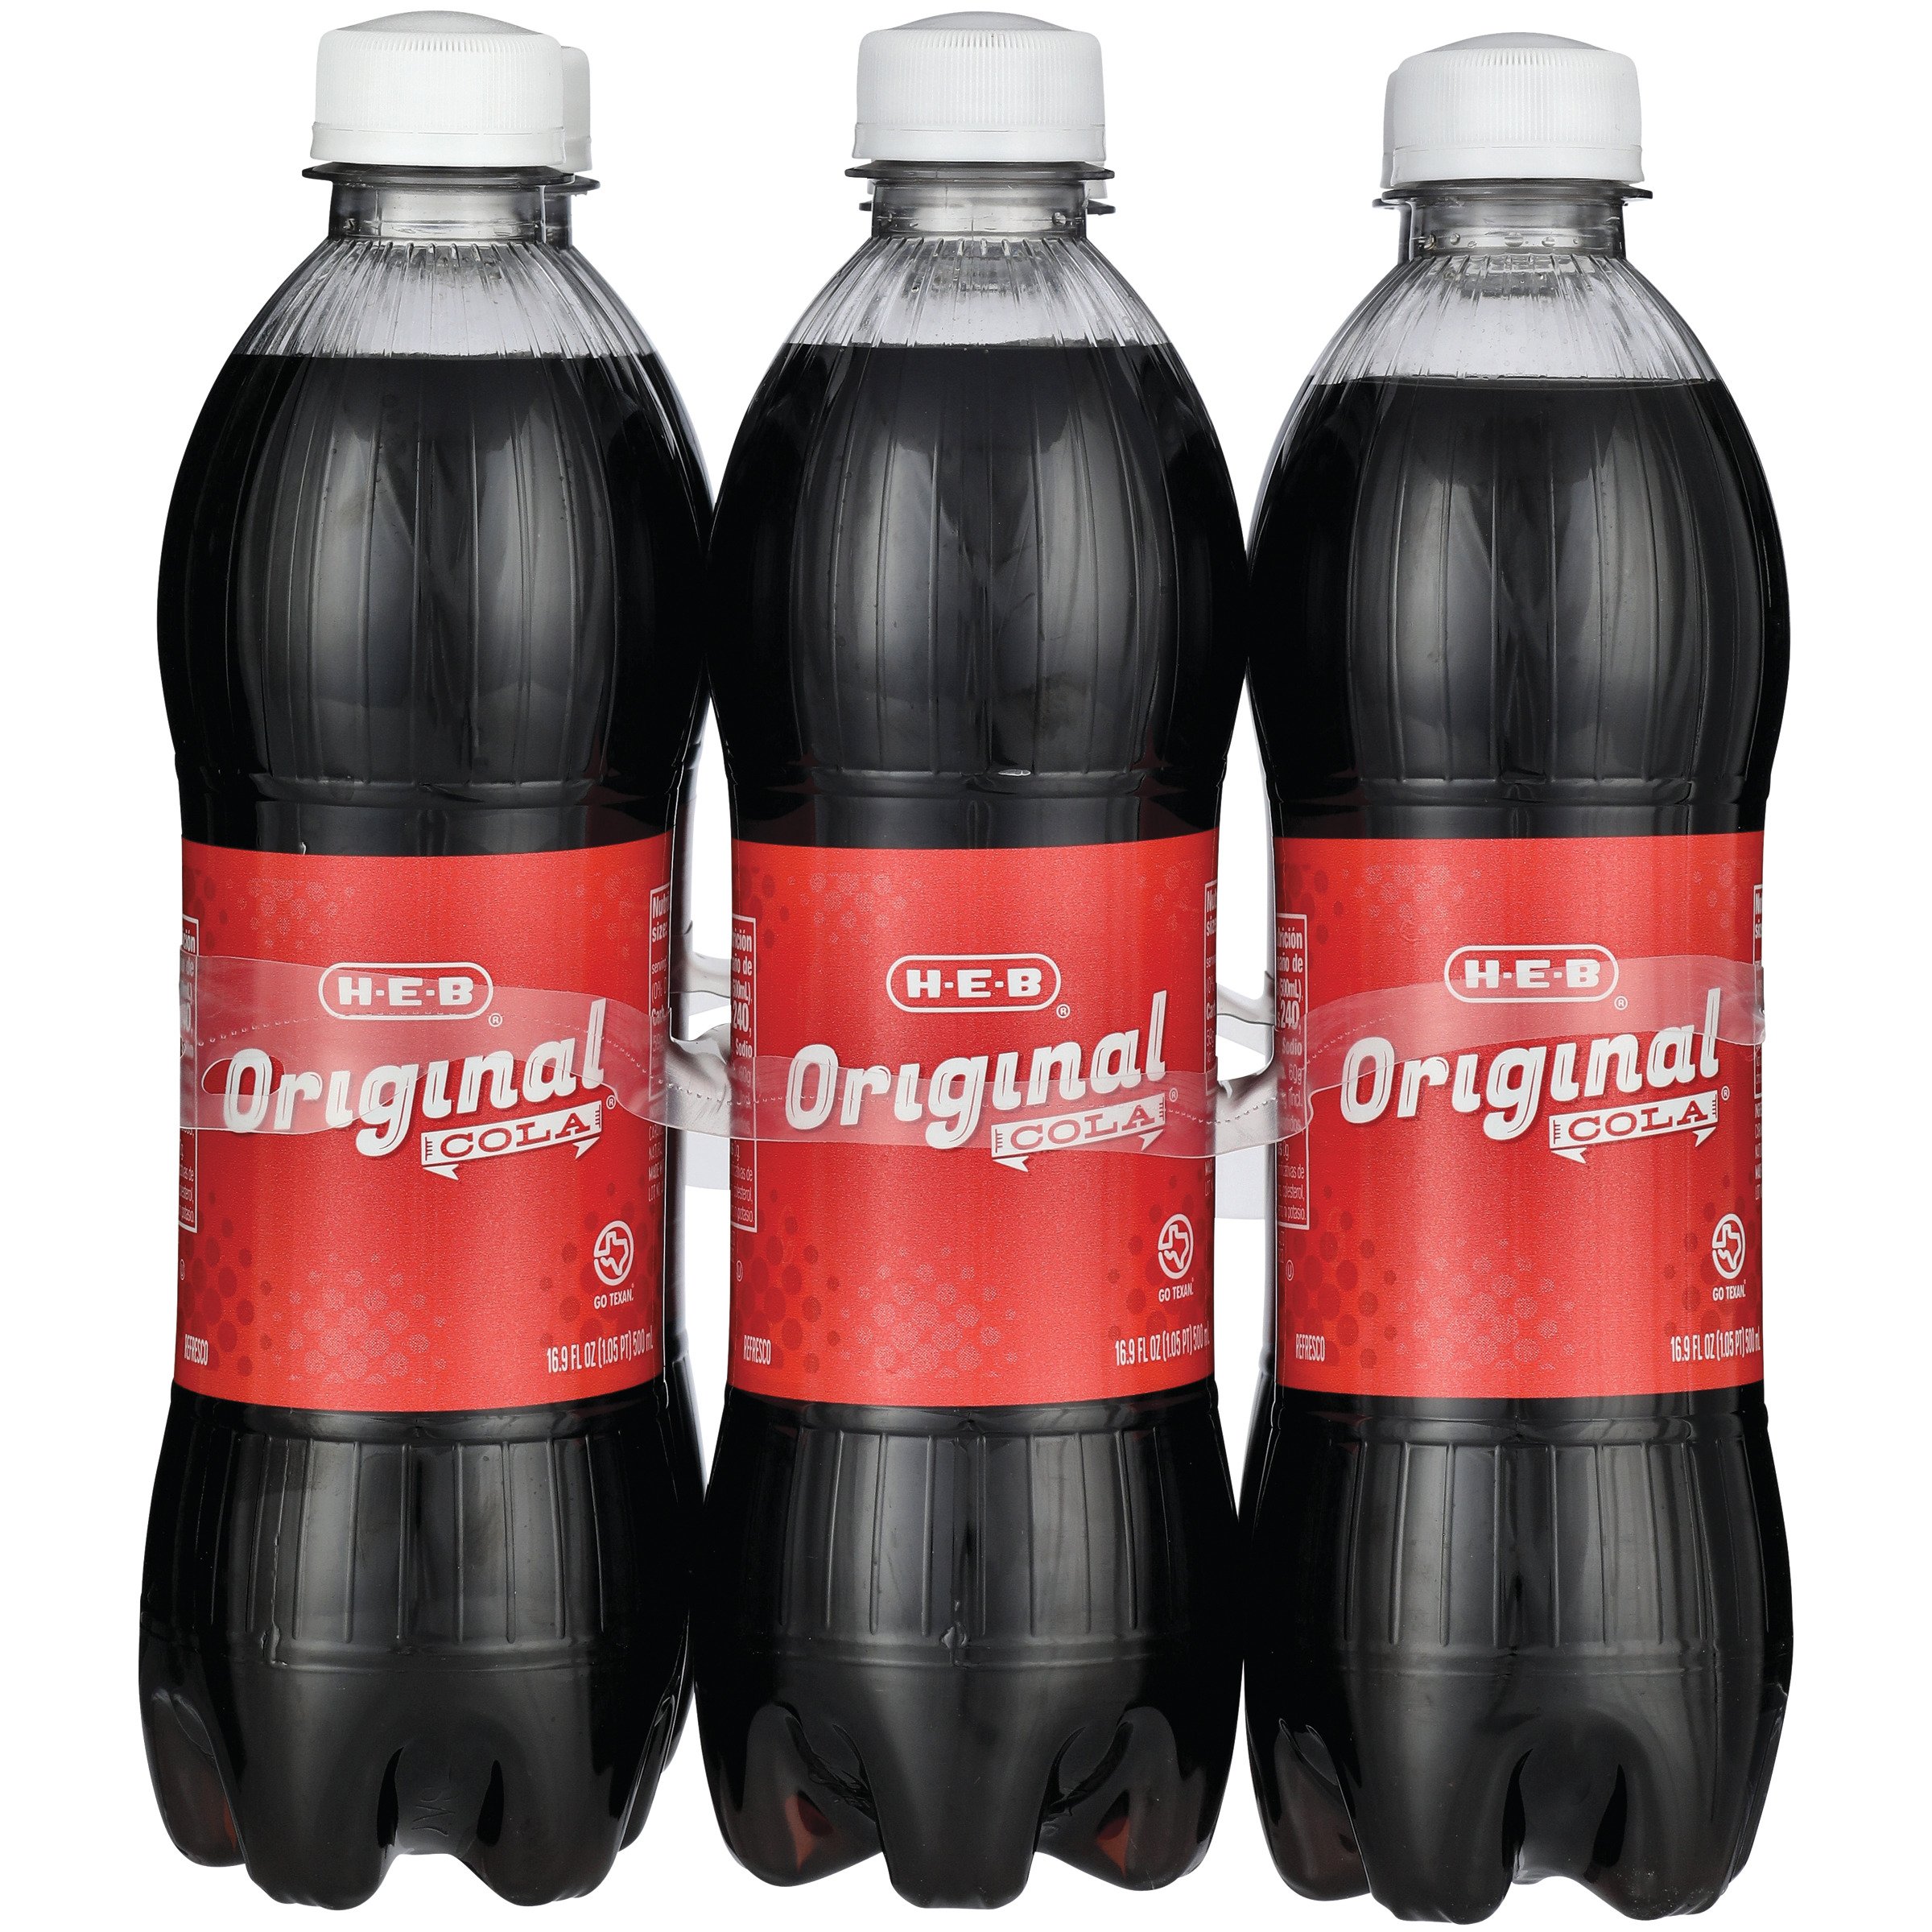 Coca-Cola Regular Soda, 4 pk./2L bottles